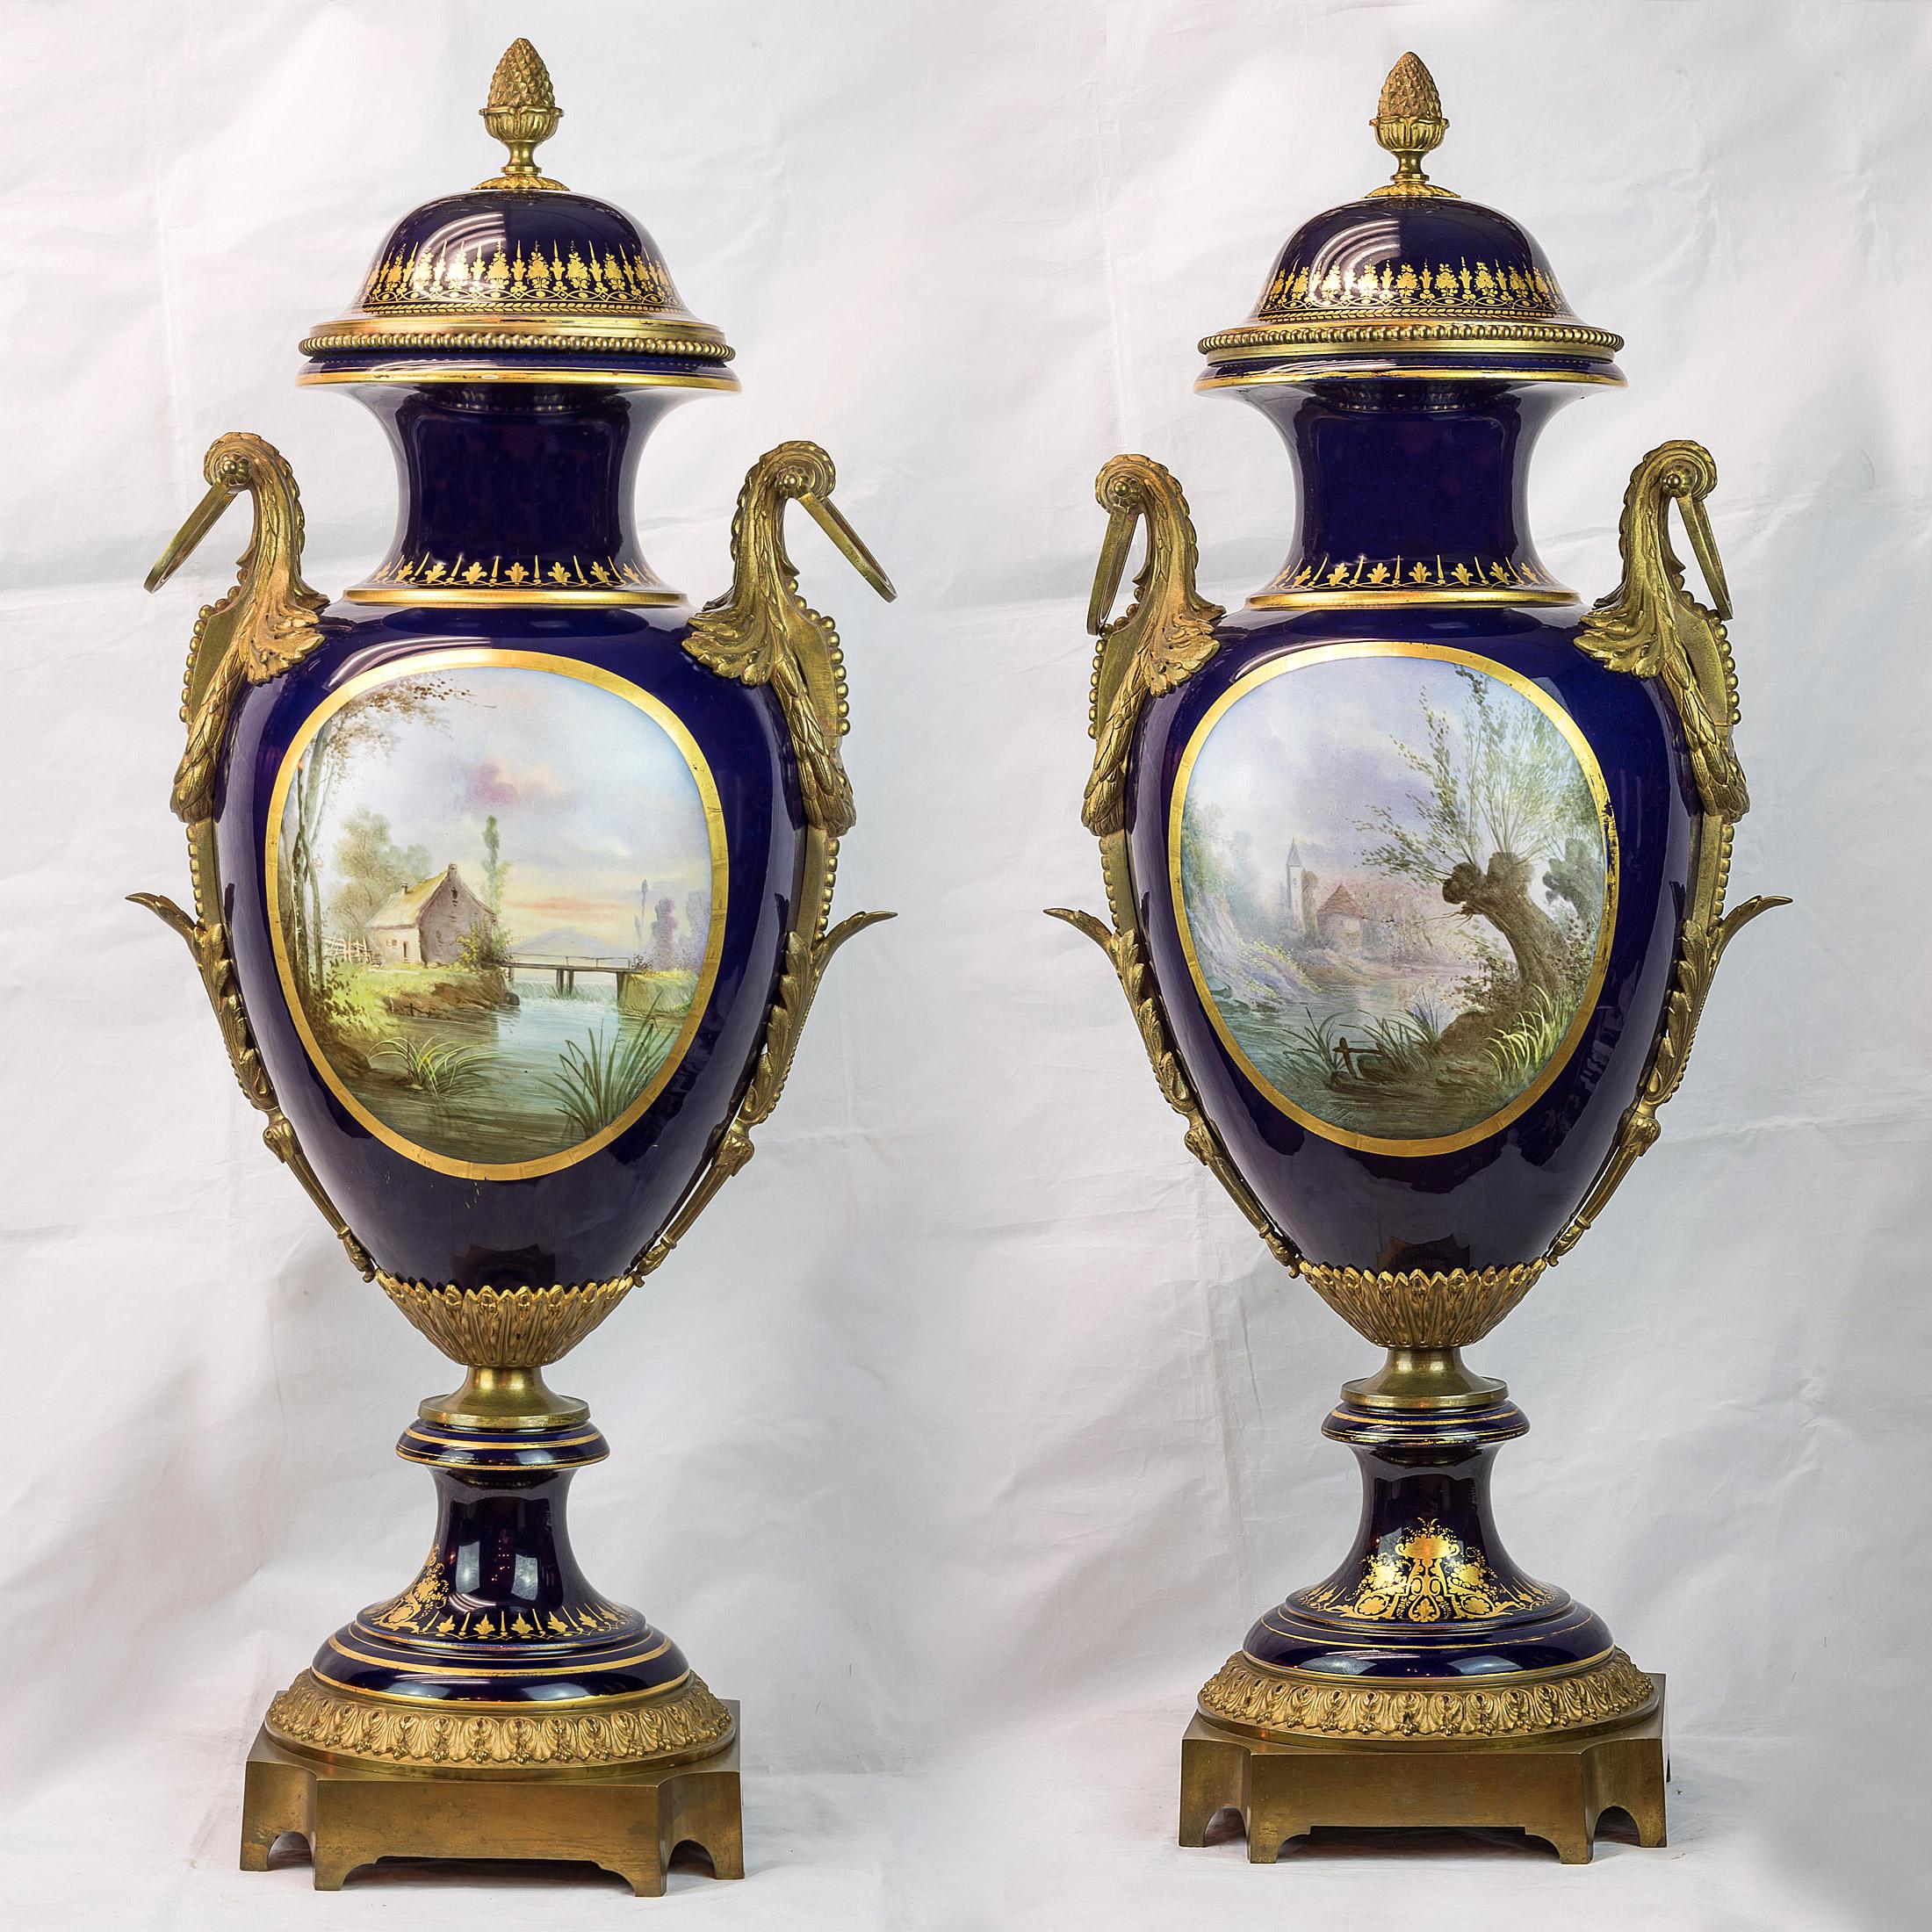 Importante paire de vases en porcelaine de Sèvres bleu cobalt montés en bronze doré, avec des portraits et des scènes peints à la main au recto et au verso.

Date : vers 1880
Origine : Français
Dimension : 38 in. x 16 1/2 in.
 